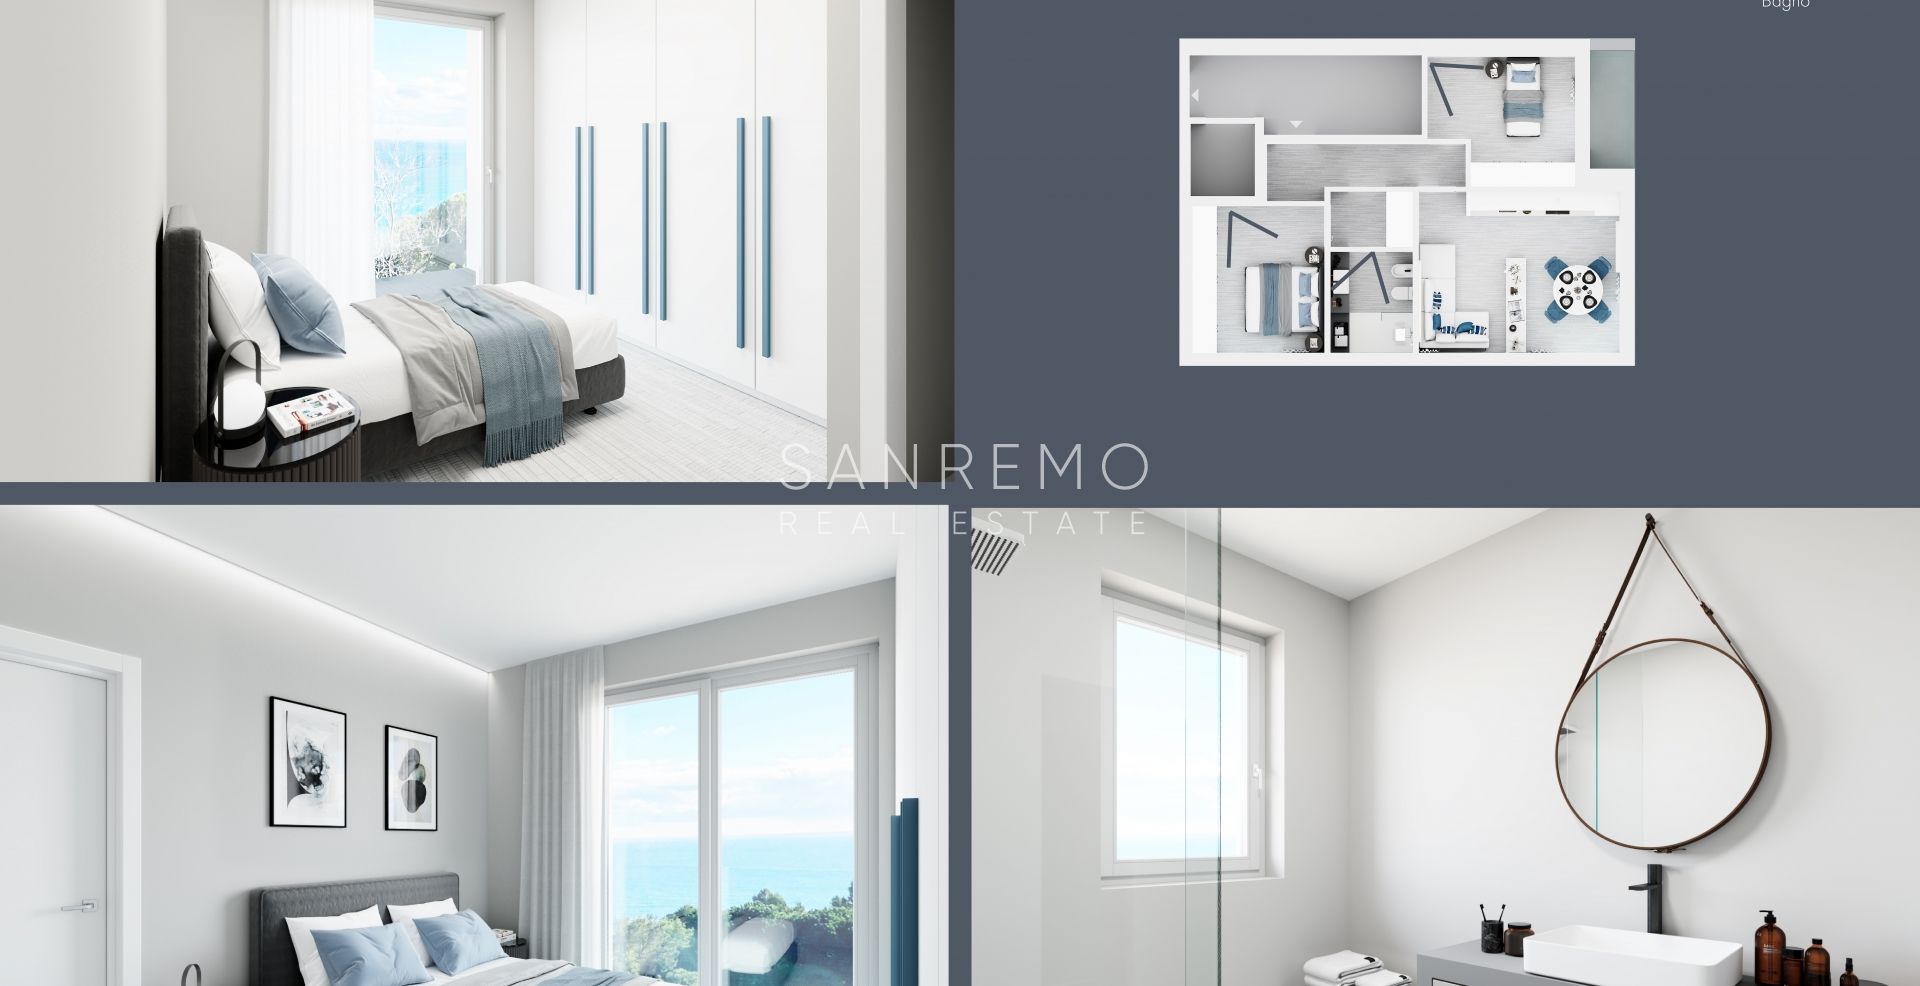 Nuovi appartamenti in Bussana di Sanremo